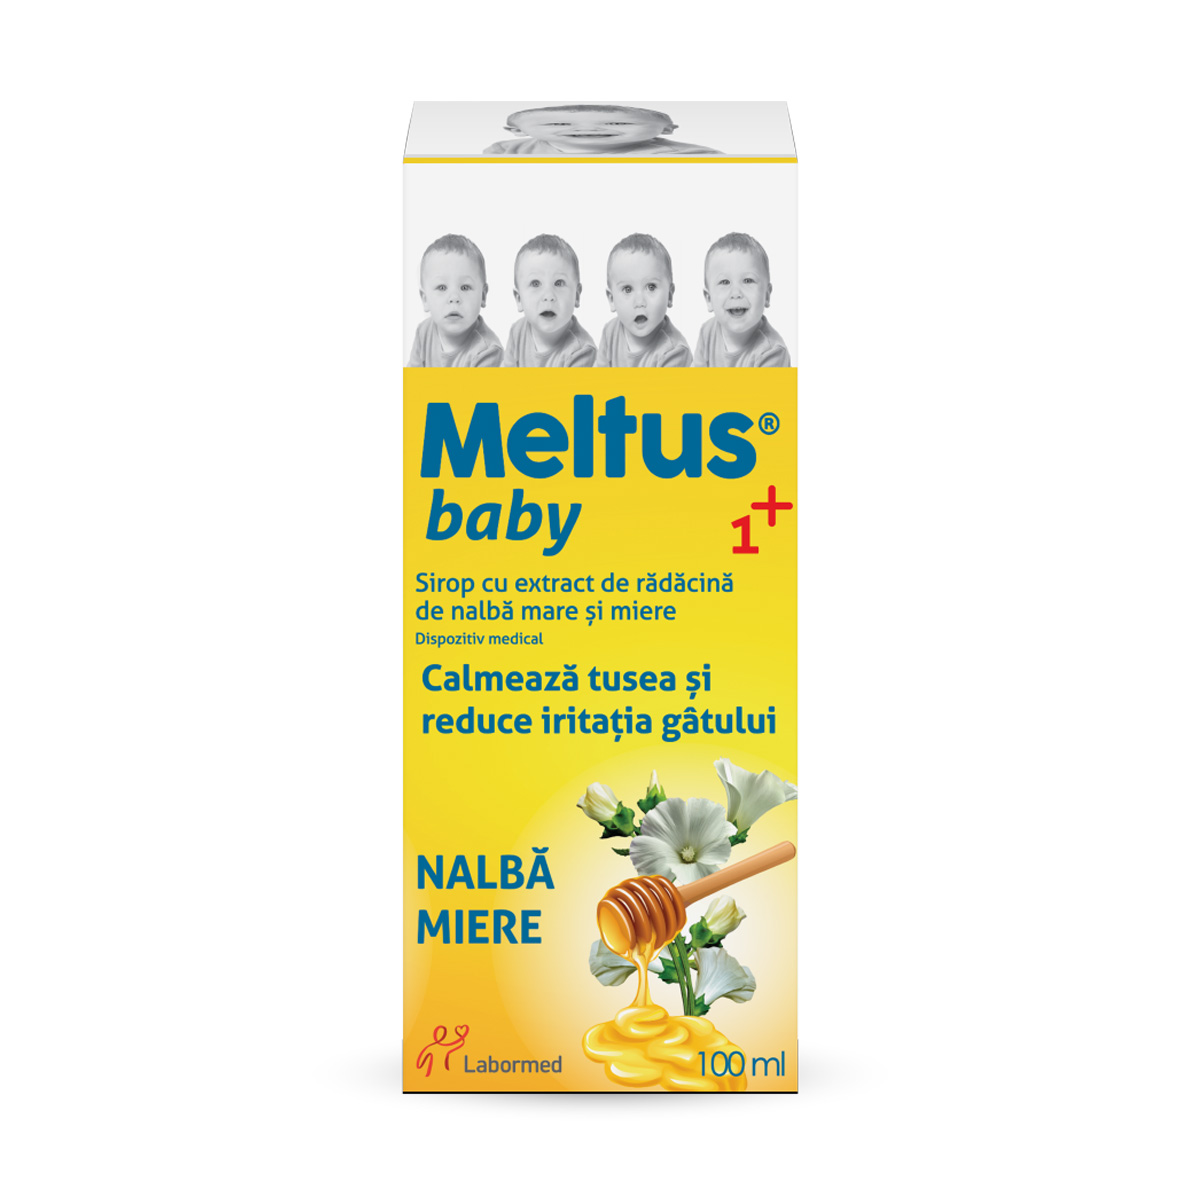 Meltus Baby sirop cu miere, propolis si extract de nalba mare, 100 ml, Labormed